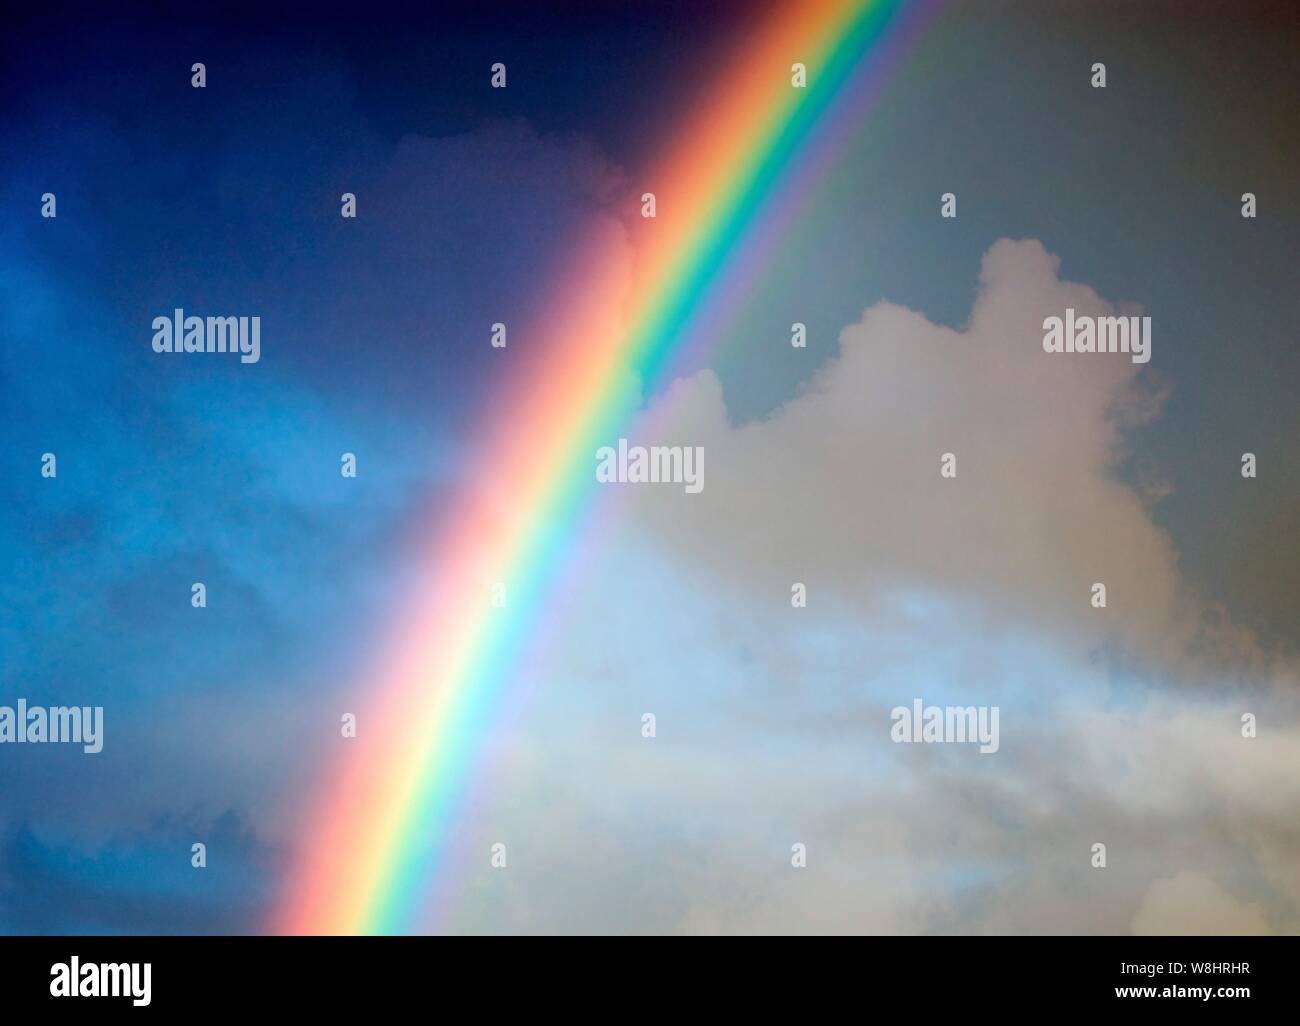 Rainbow, illustration. Stock Photo